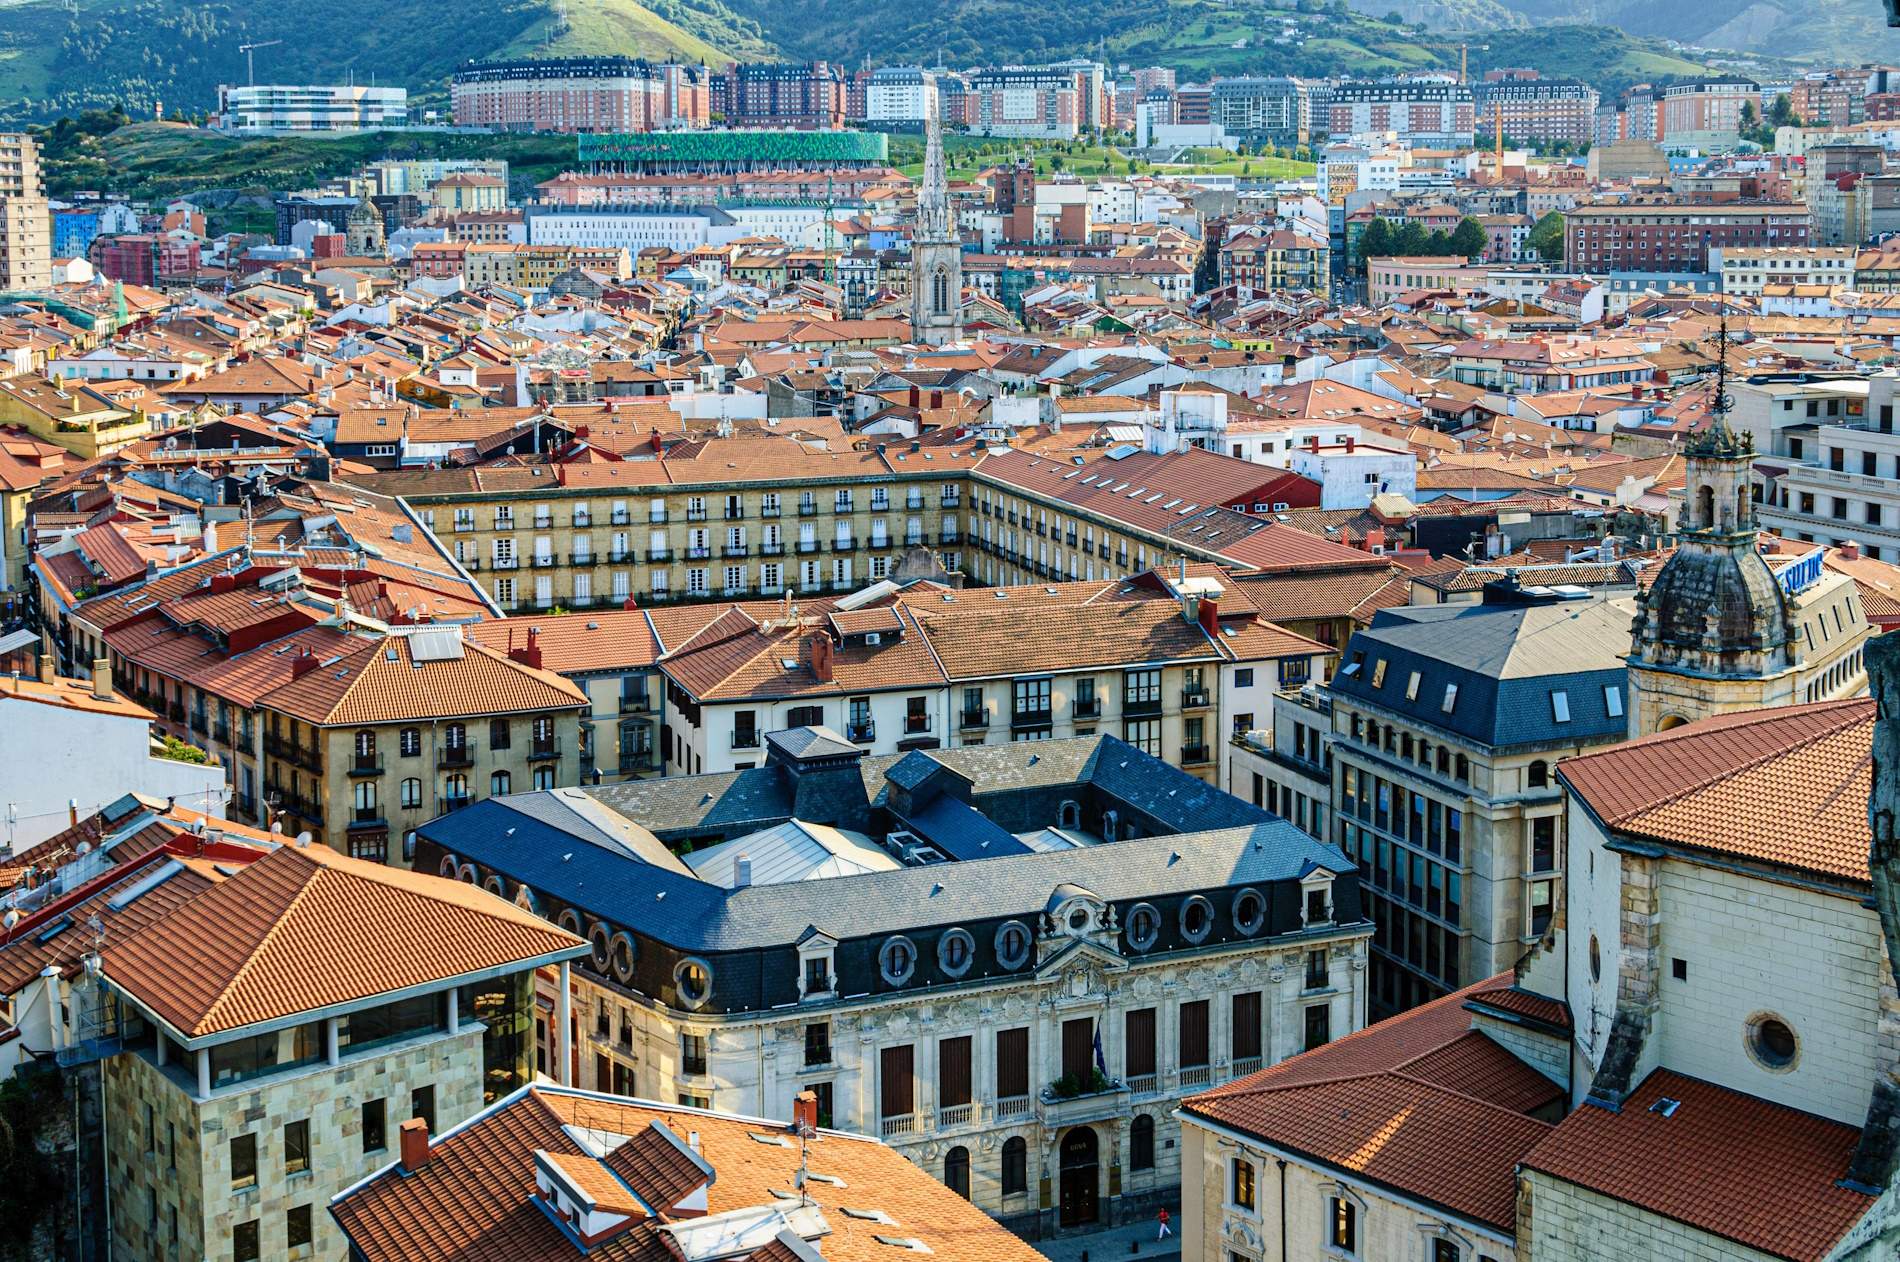 La gran feria tecnológica de la industria alimentaria llega a Bilbao con un impacto económico de 19 millones